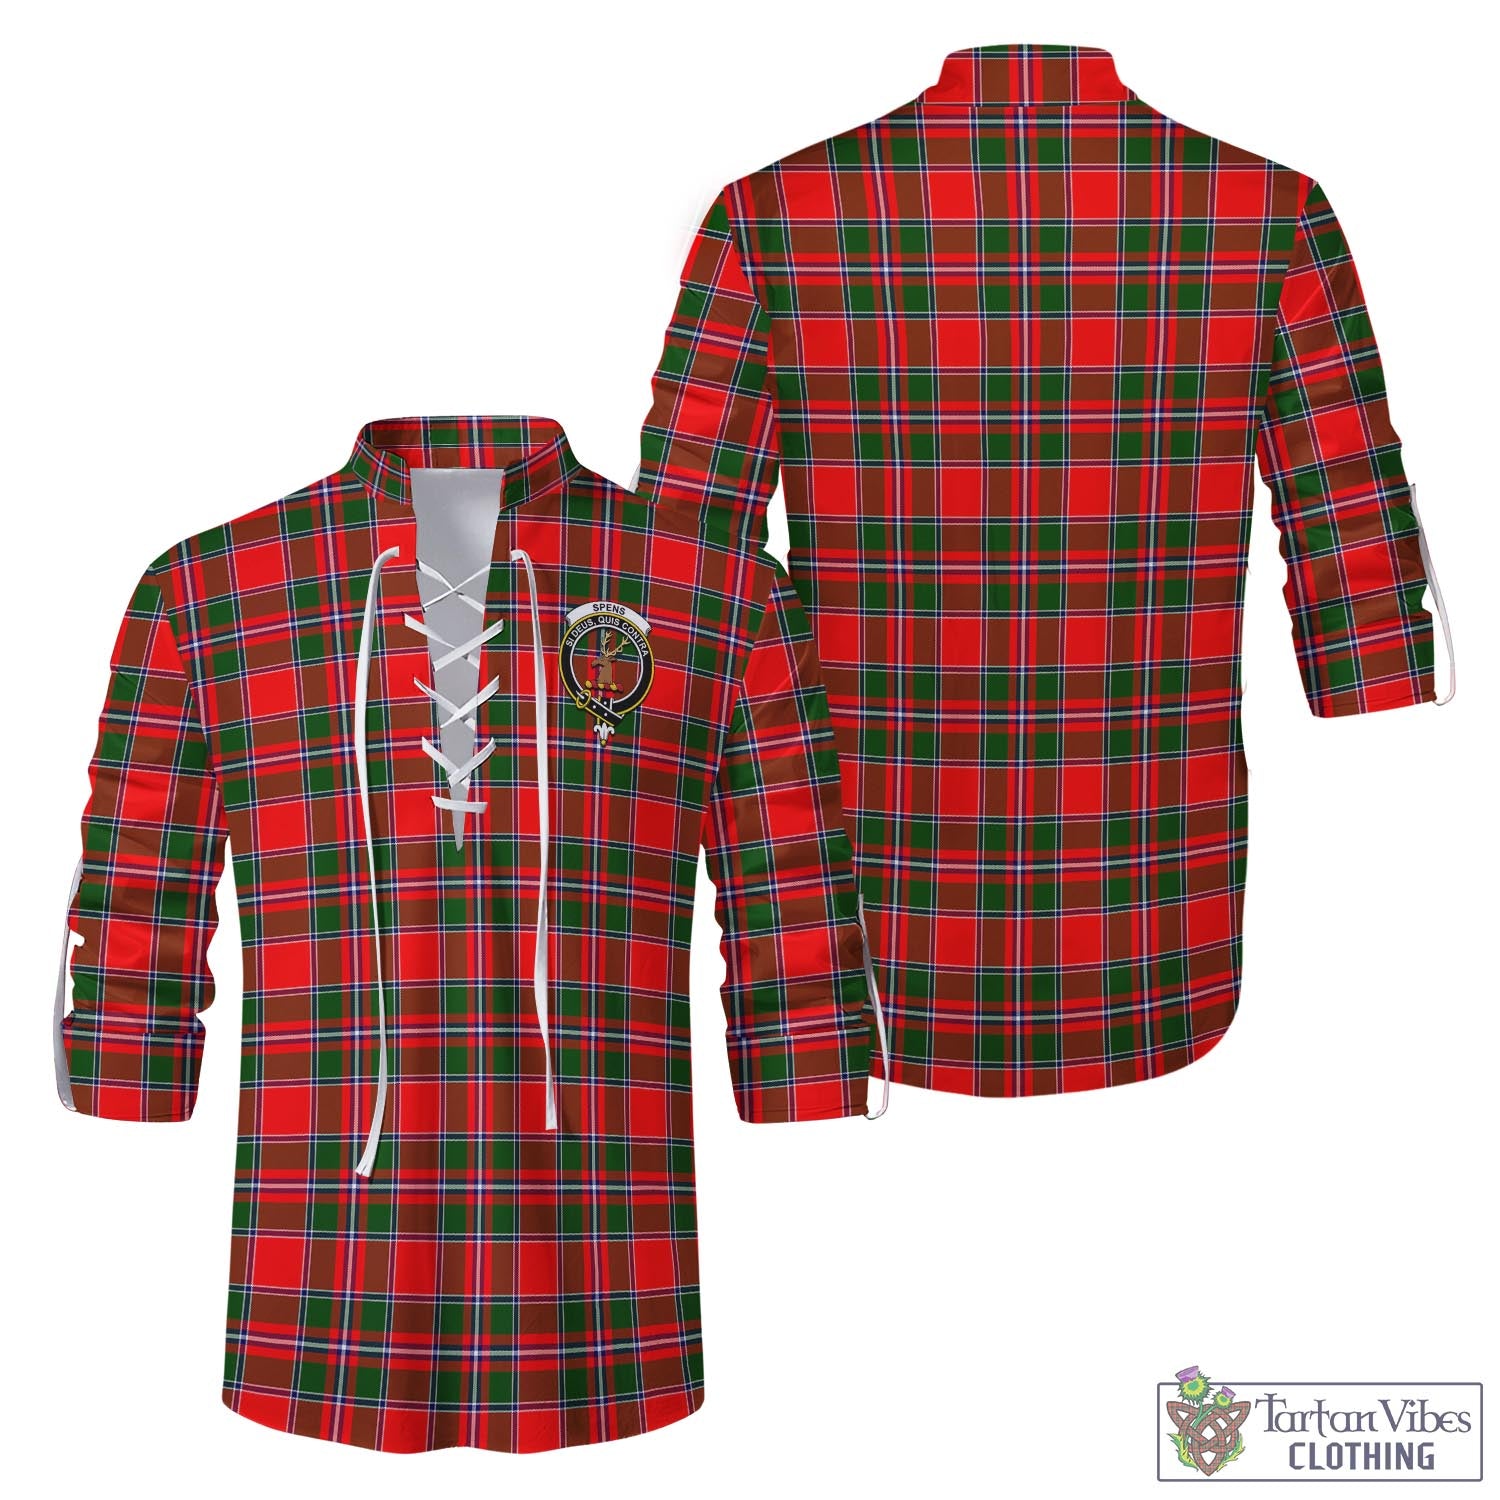 Tartan Vibes Clothing Spens Modern Tartan Men's Scottish Traditional Jacobite Ghillie Kilt Shirt with Family Crest